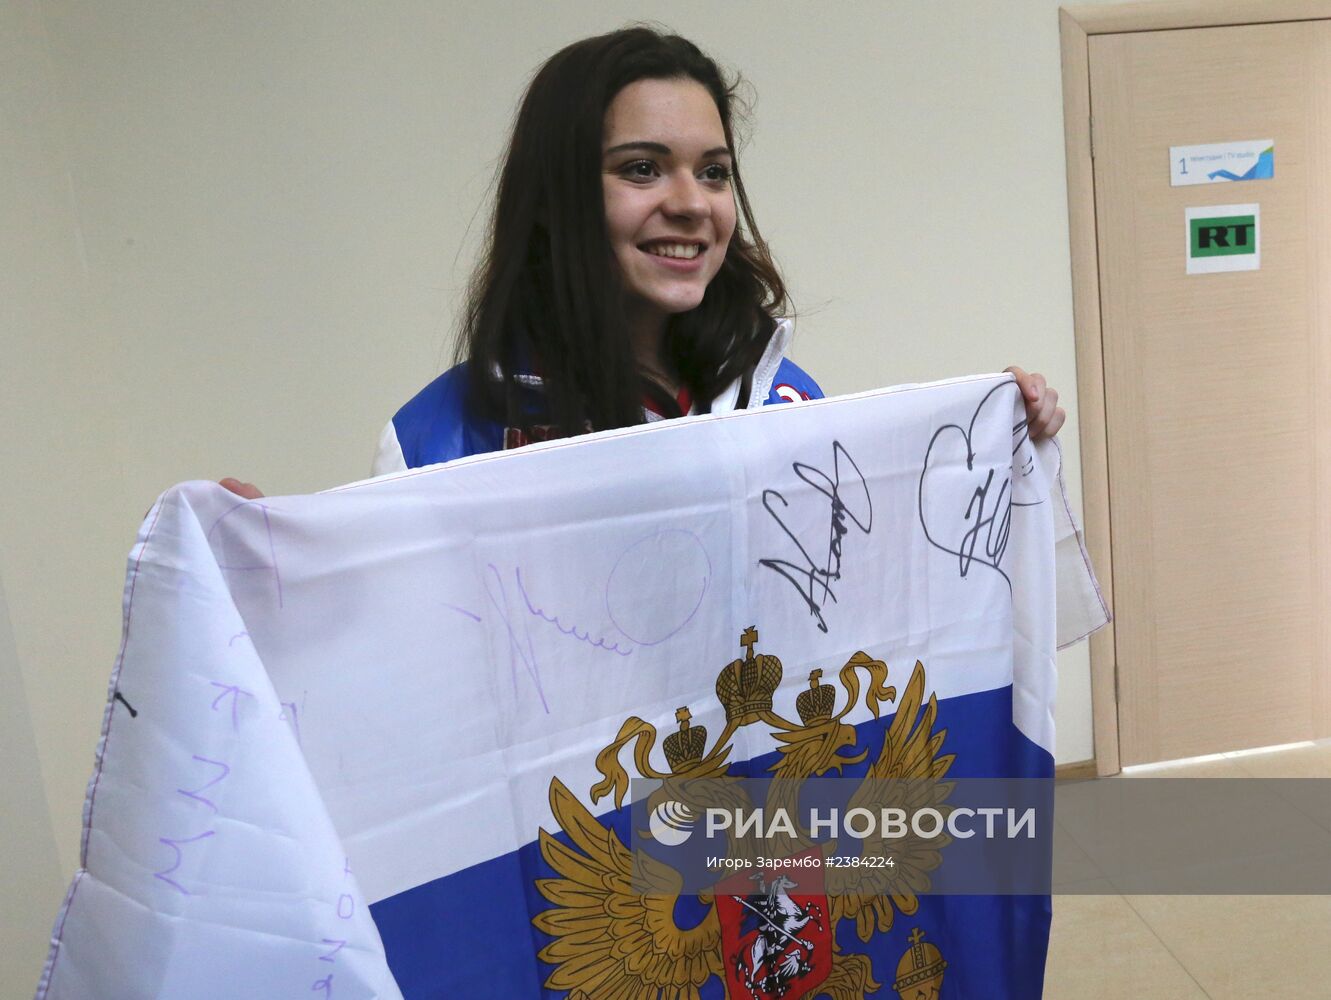 Пресс-конференция российских чемпионок по фигурному катанию на Олимпиаде 2014